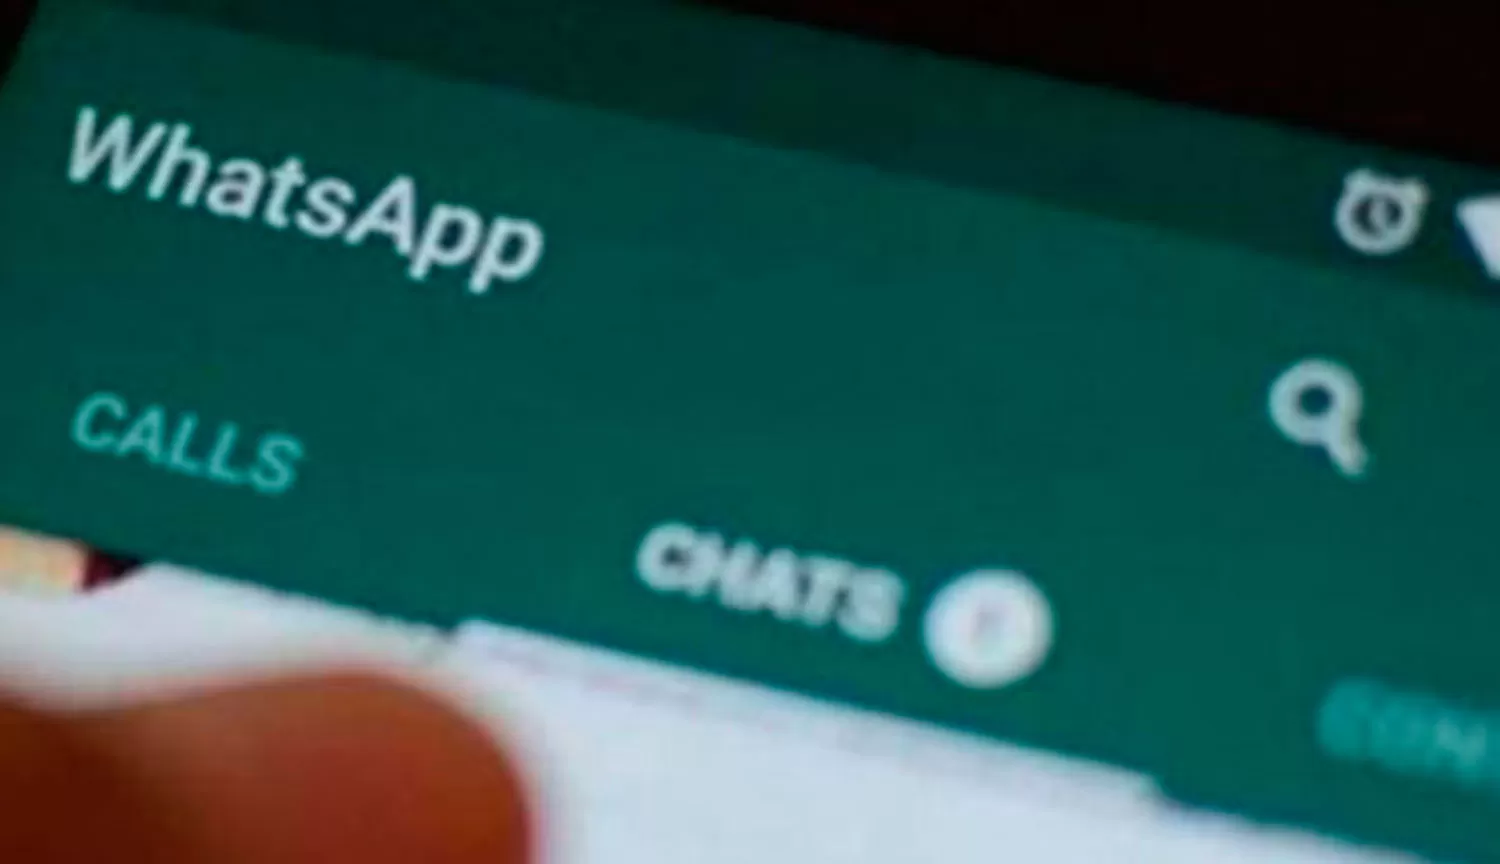 WhatsApp comenzará a mostrar publicidad en 2020